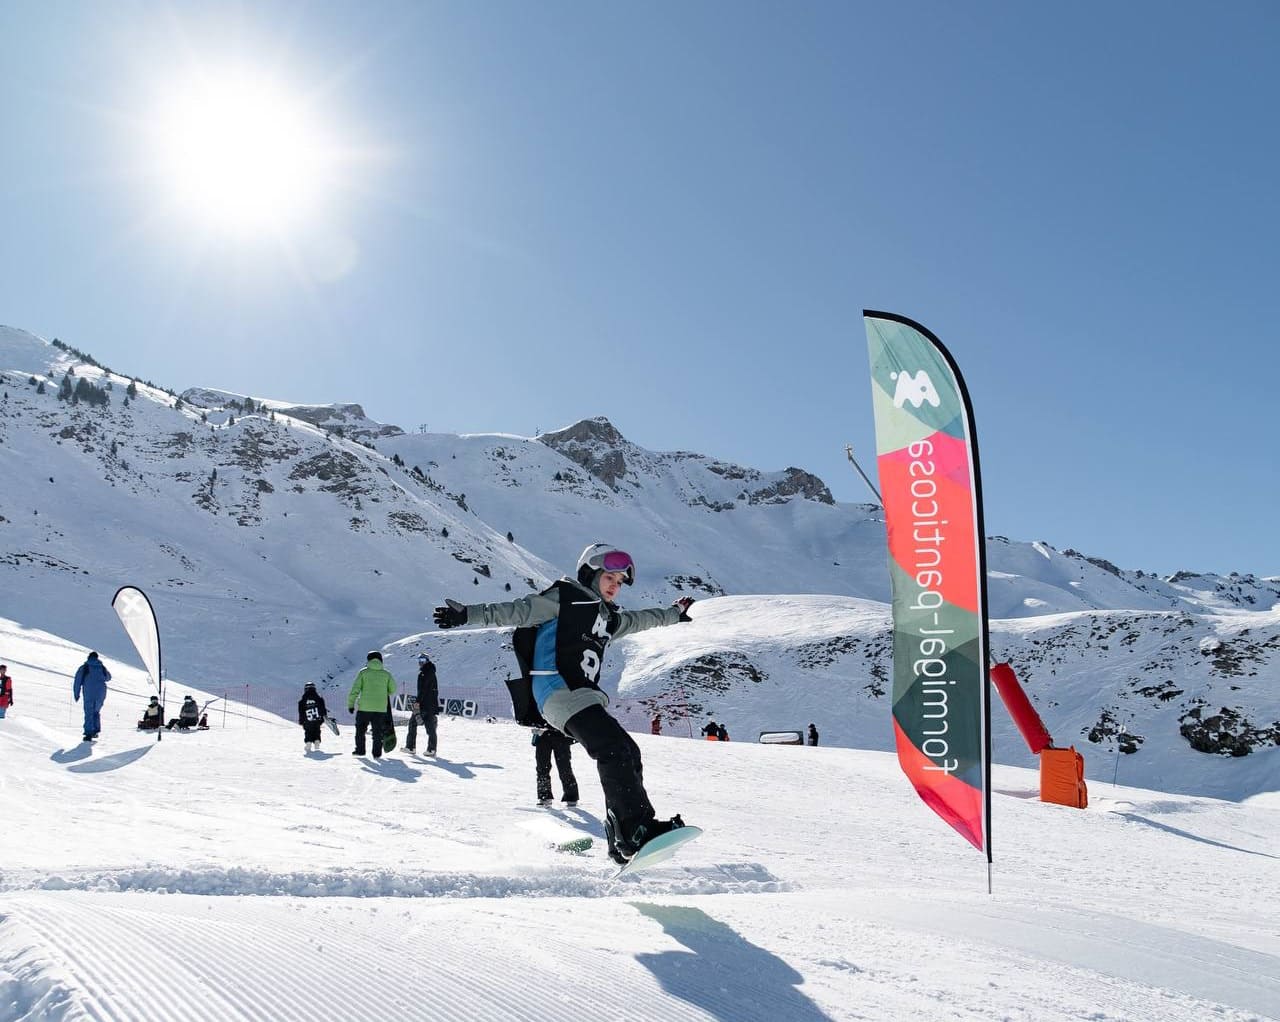 Competiciones y après-ski para todos en el reino de Aramón este fin de semana